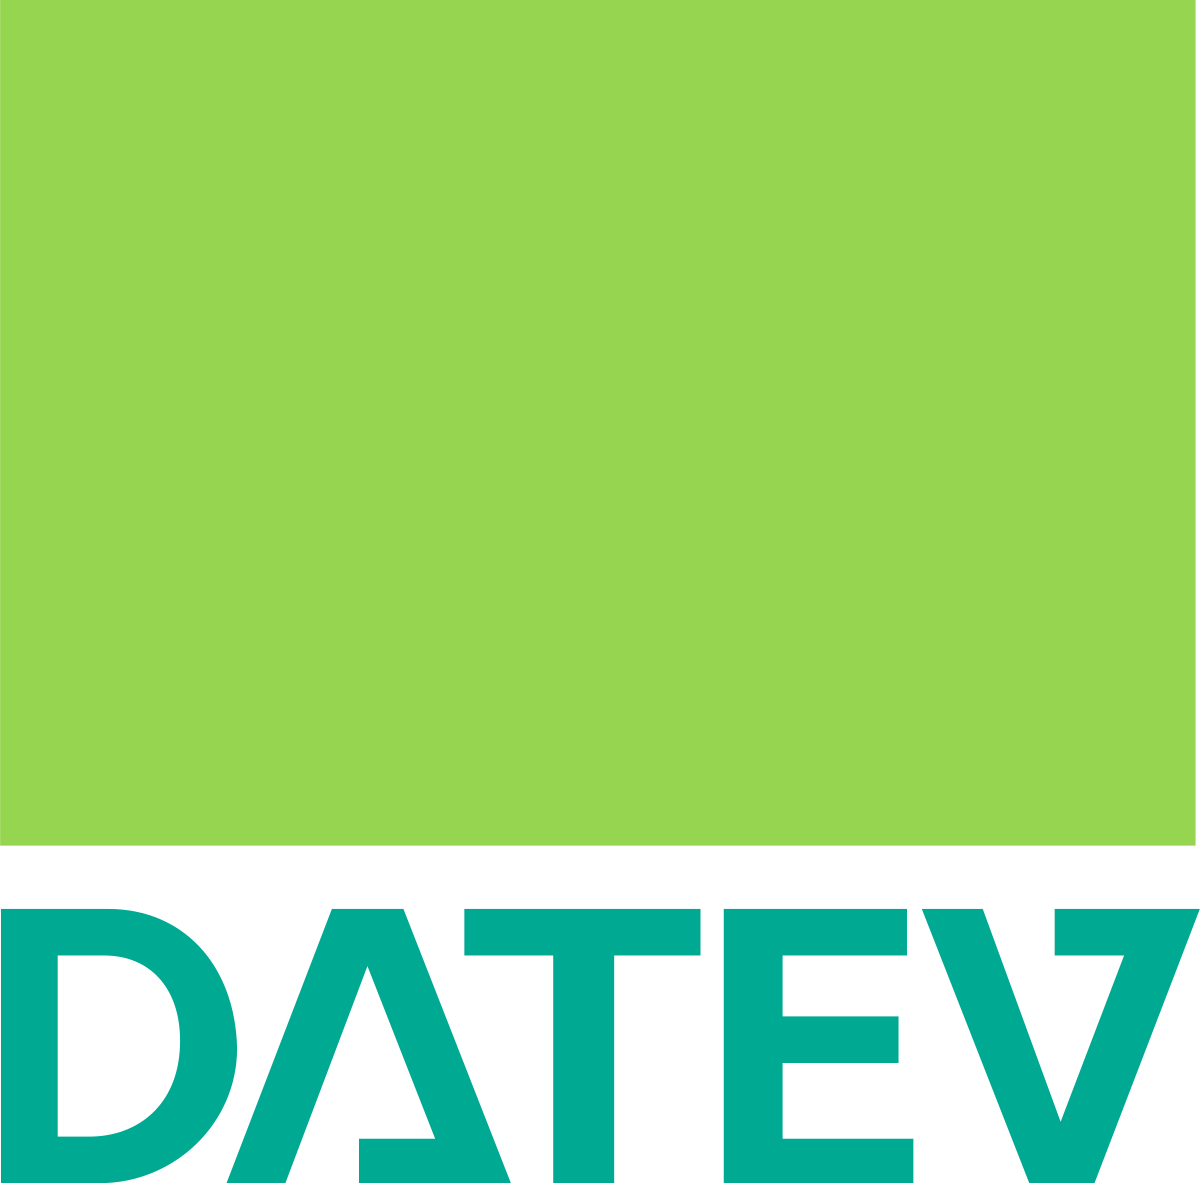 Logo Datev